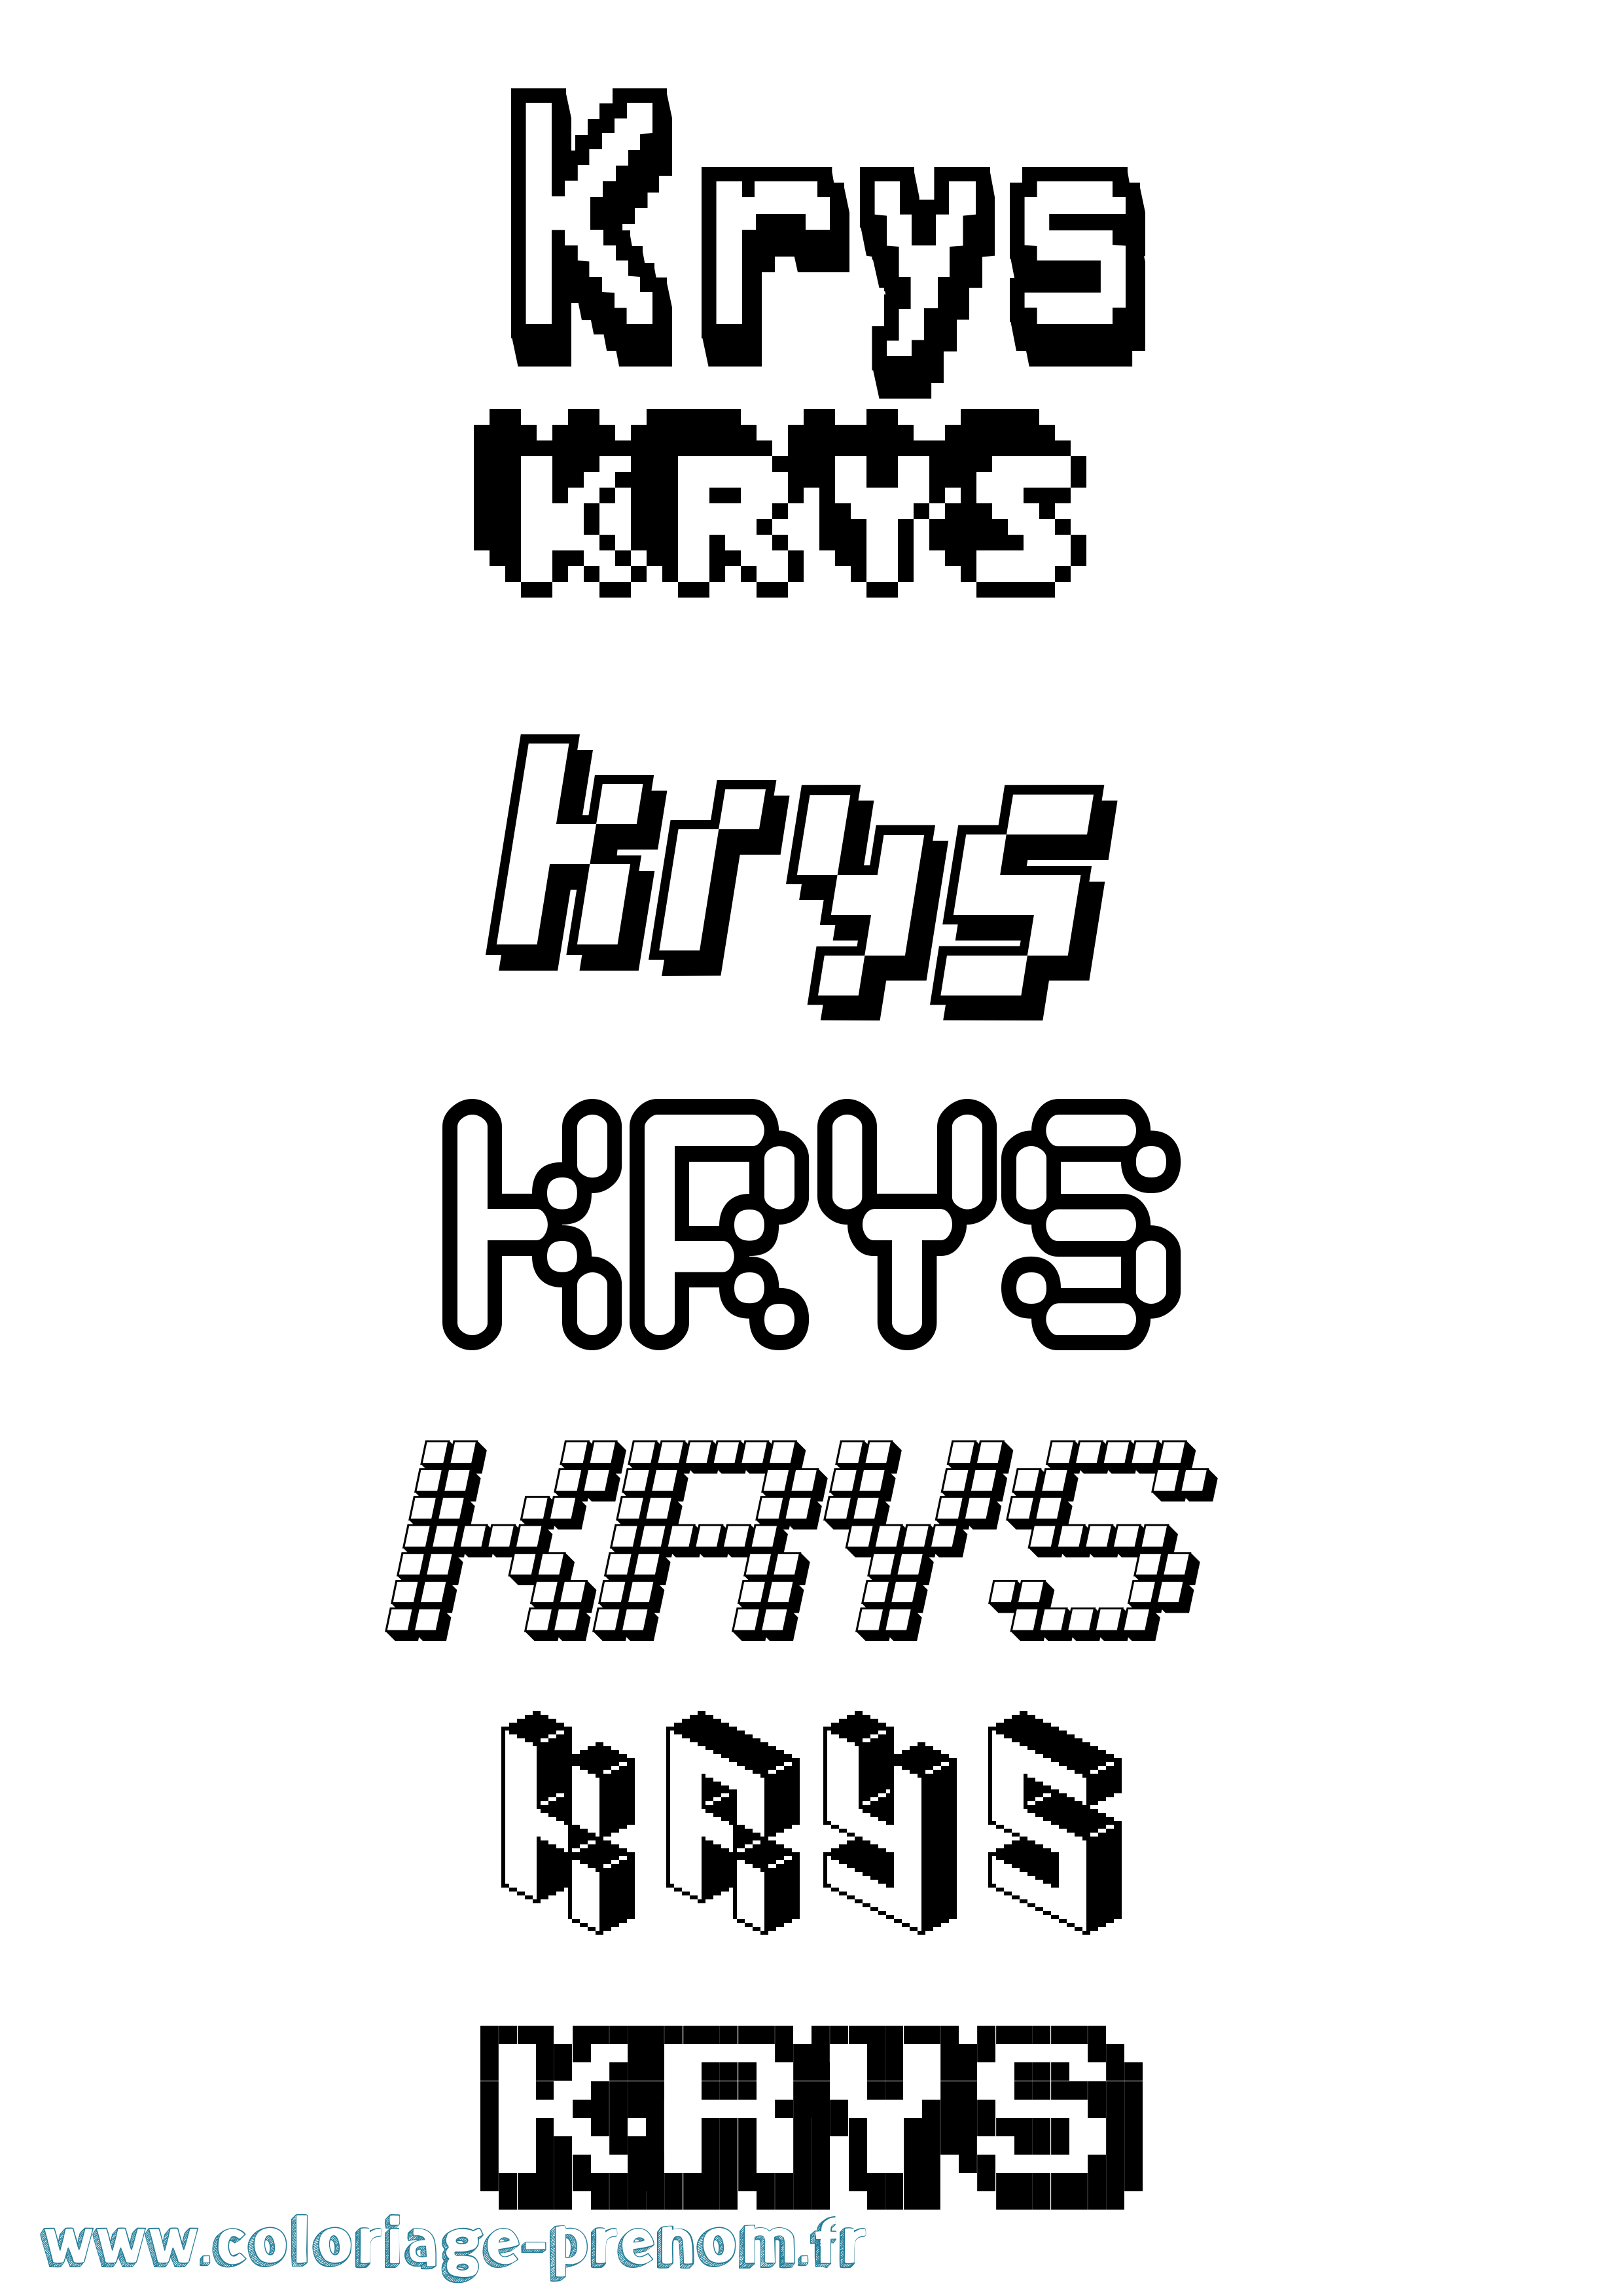 Coloriage prénom Krys Pixel